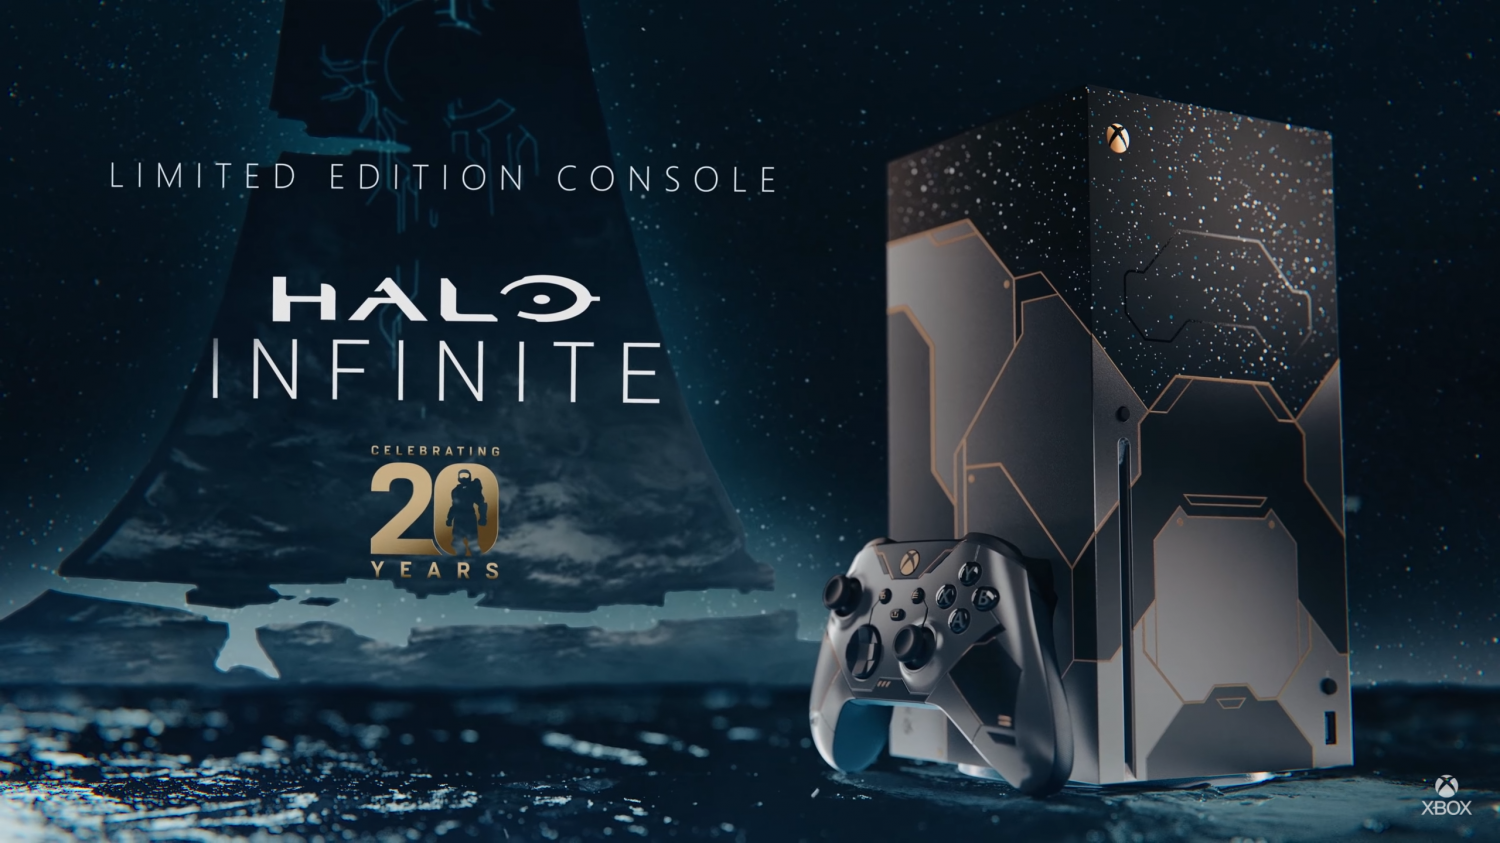 Celebrating 20 Years of Halo